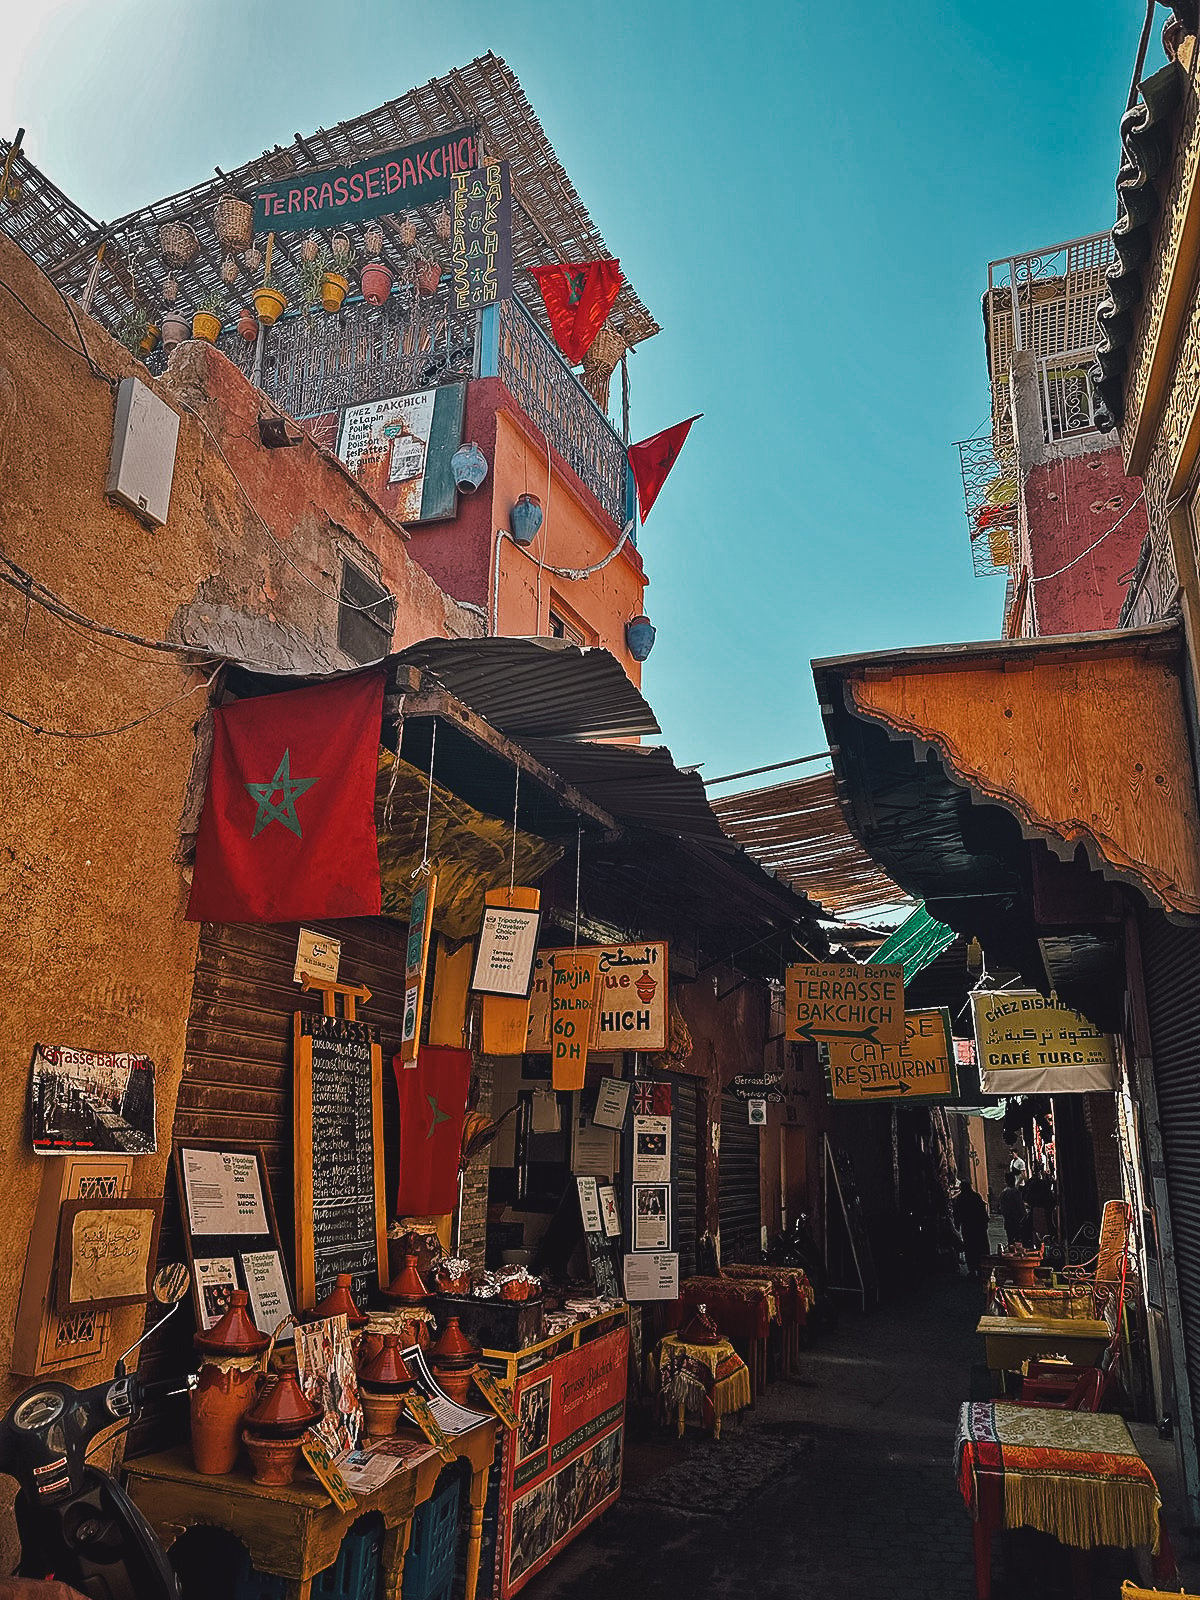 Terrasse Bakchich in Marrakesh, Morocco